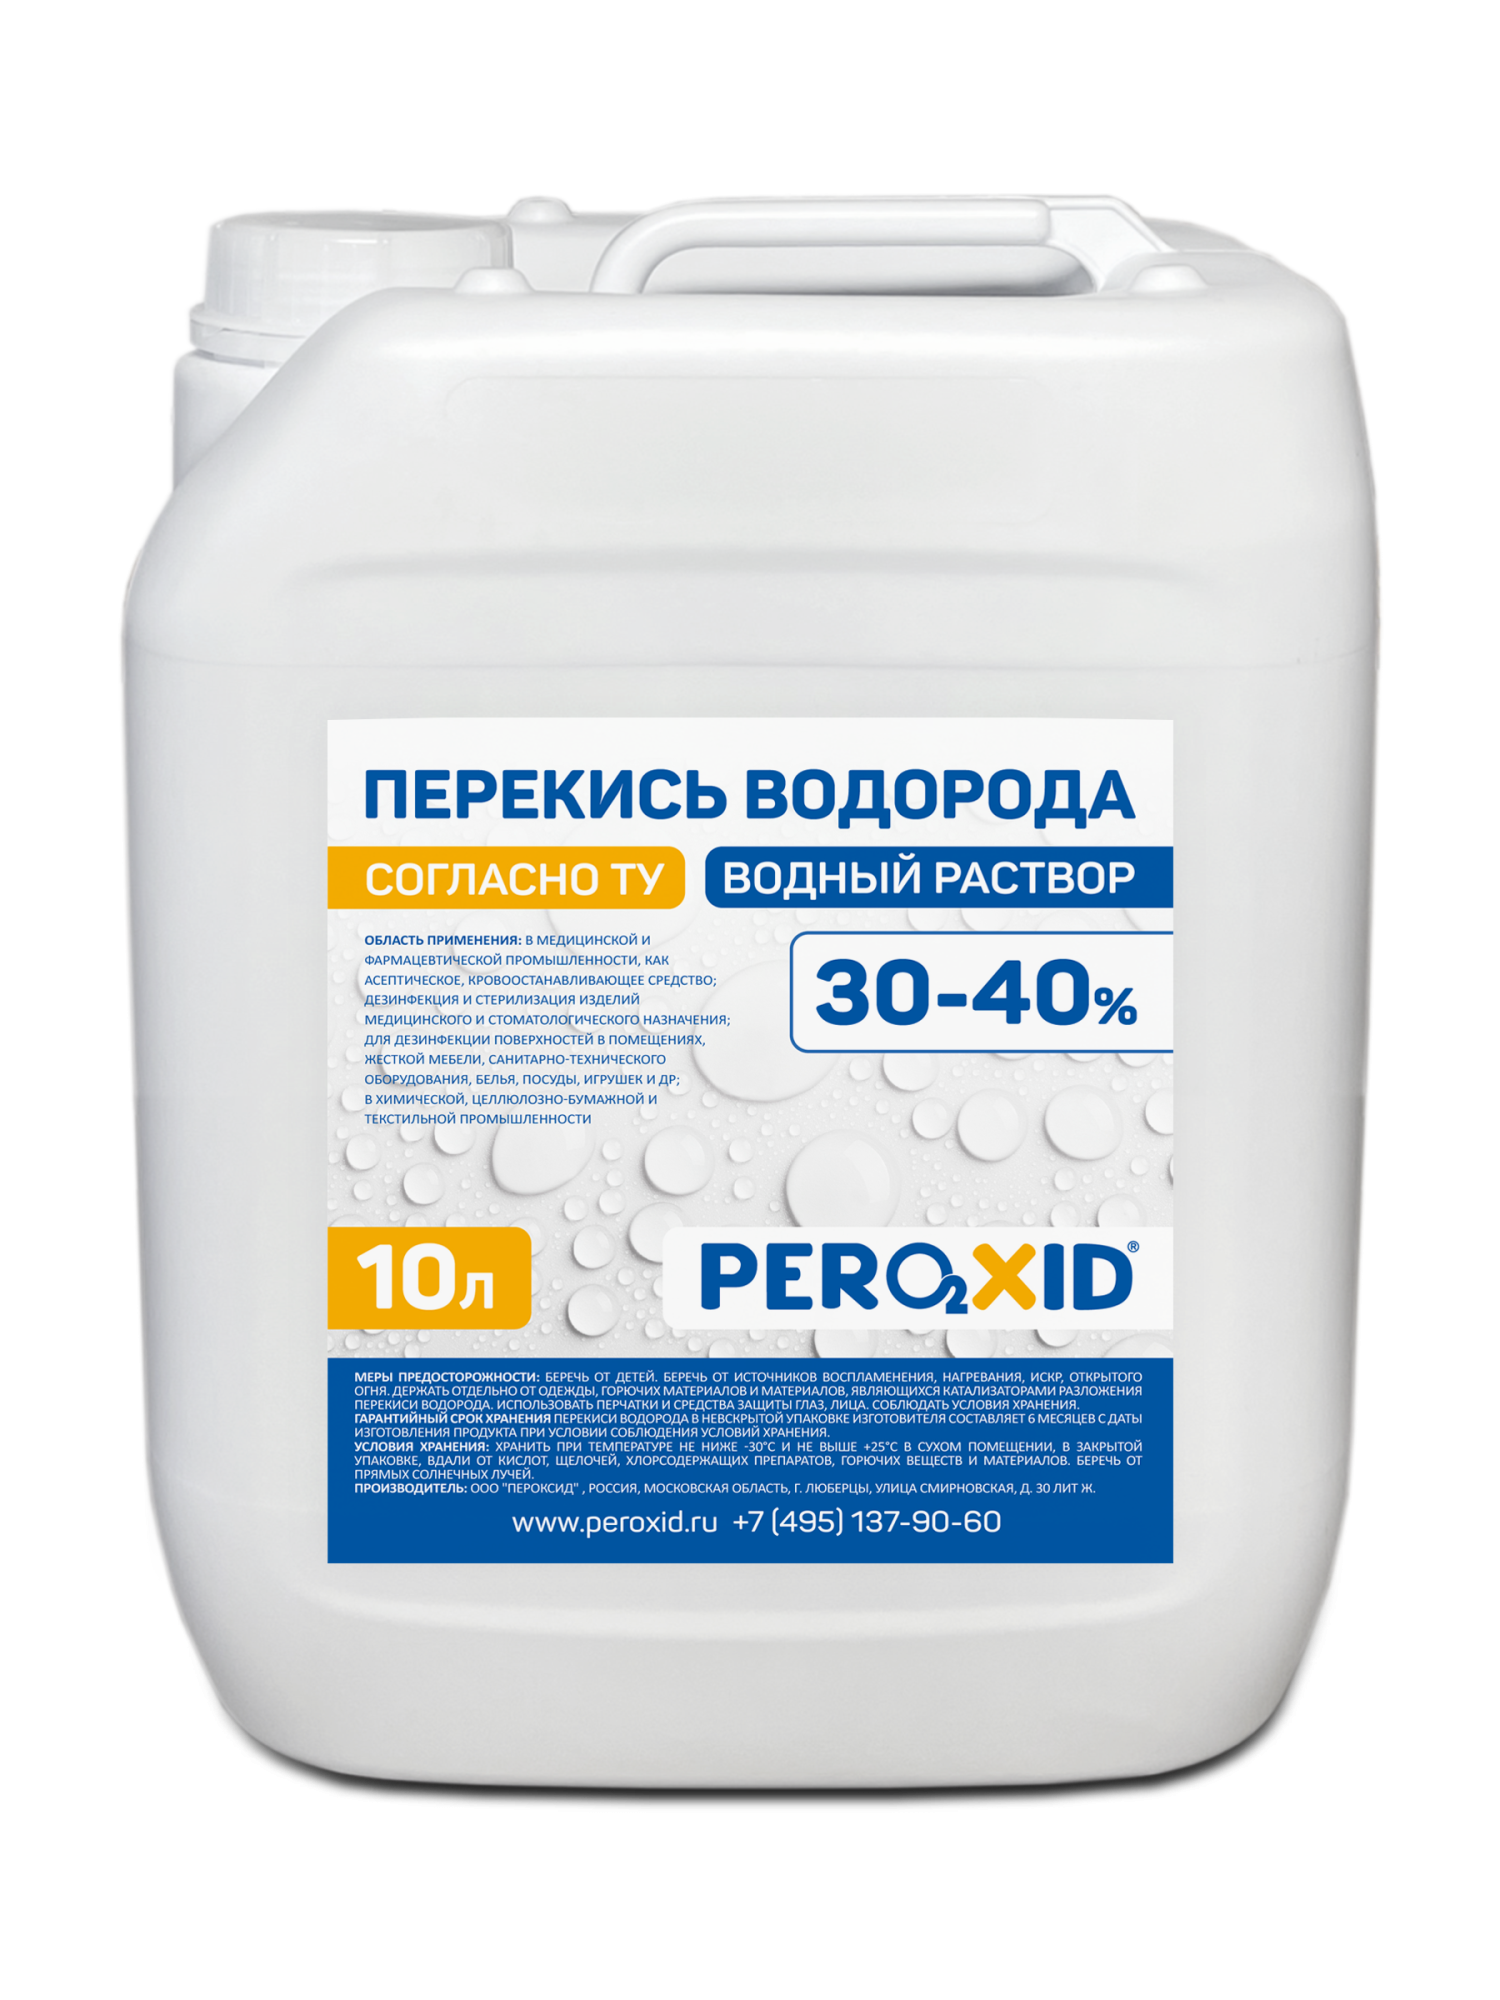 Перекись водорода водный раствор PEROXID 30-40% марка  ТУ 2123-001-25665344-2008 10 л/12 кг